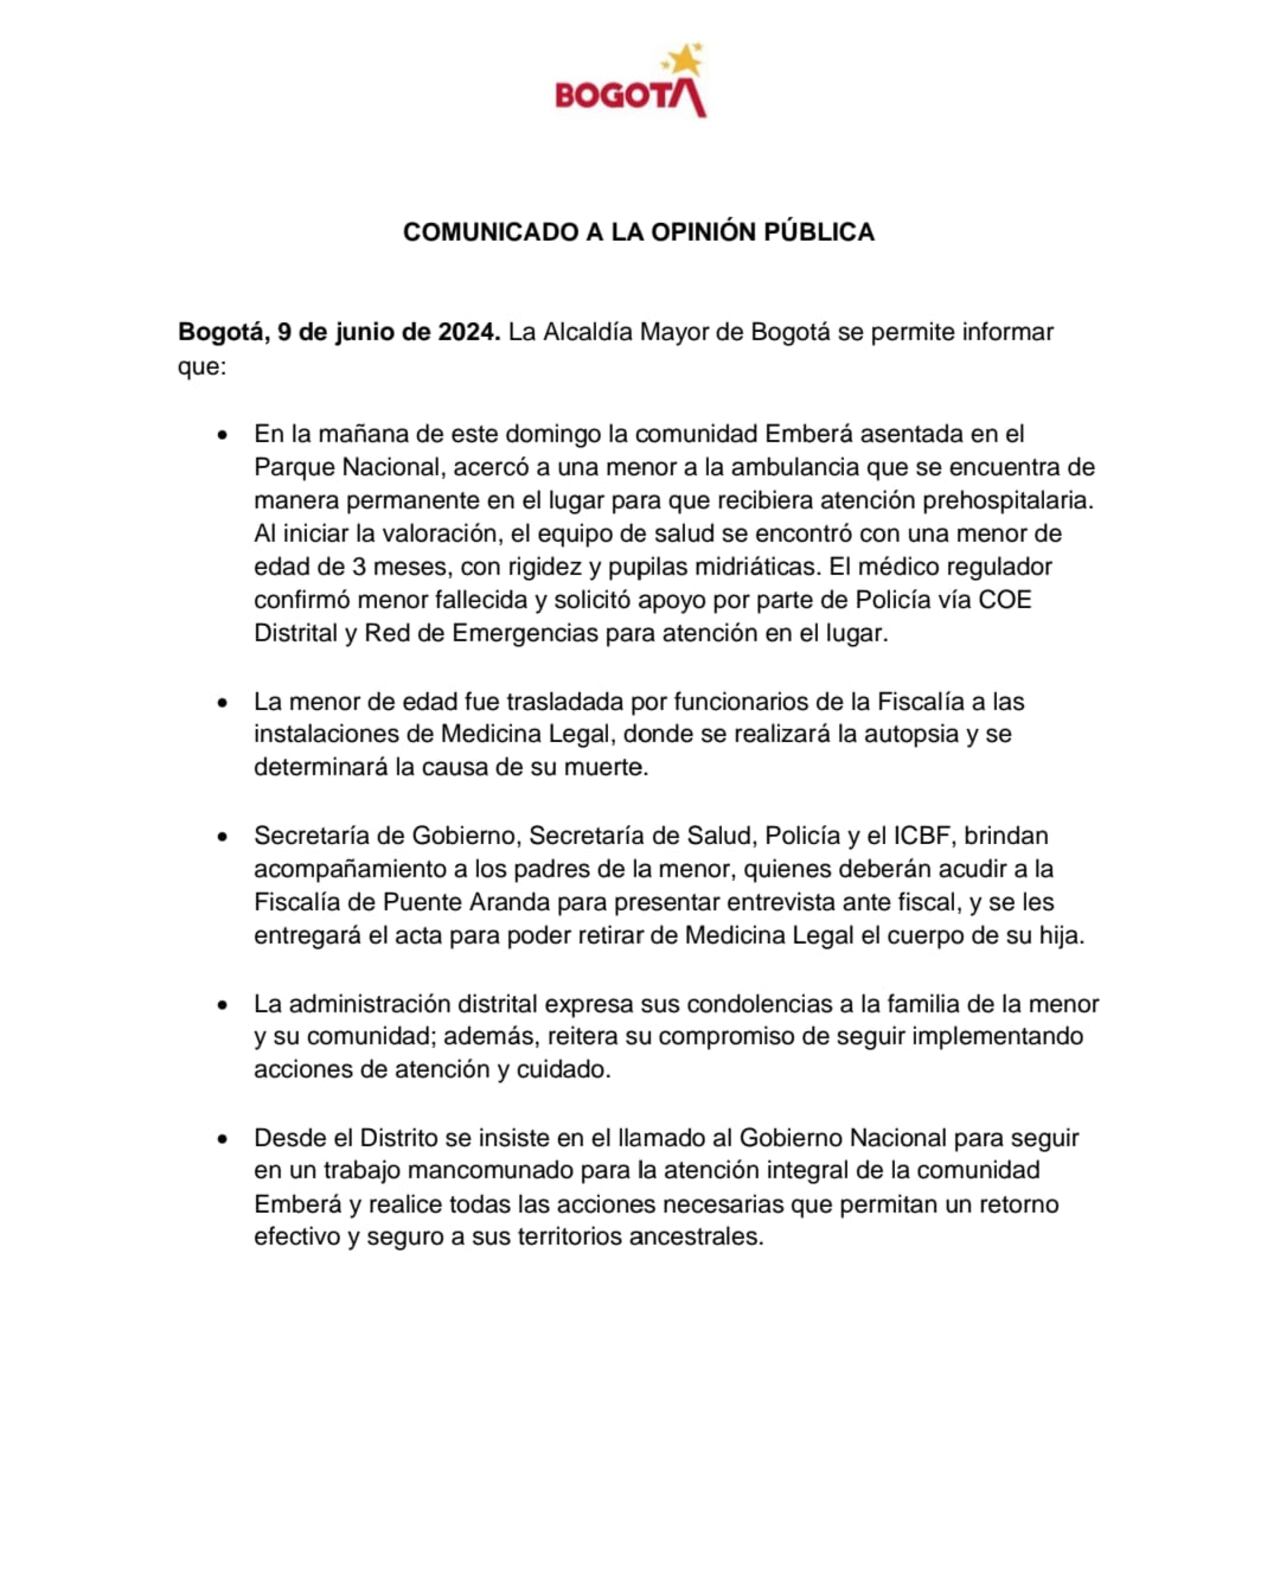 Este es el breve comunicado emitido por la Alcaldía Mayor de Bogotá frente a lo ocurrido.